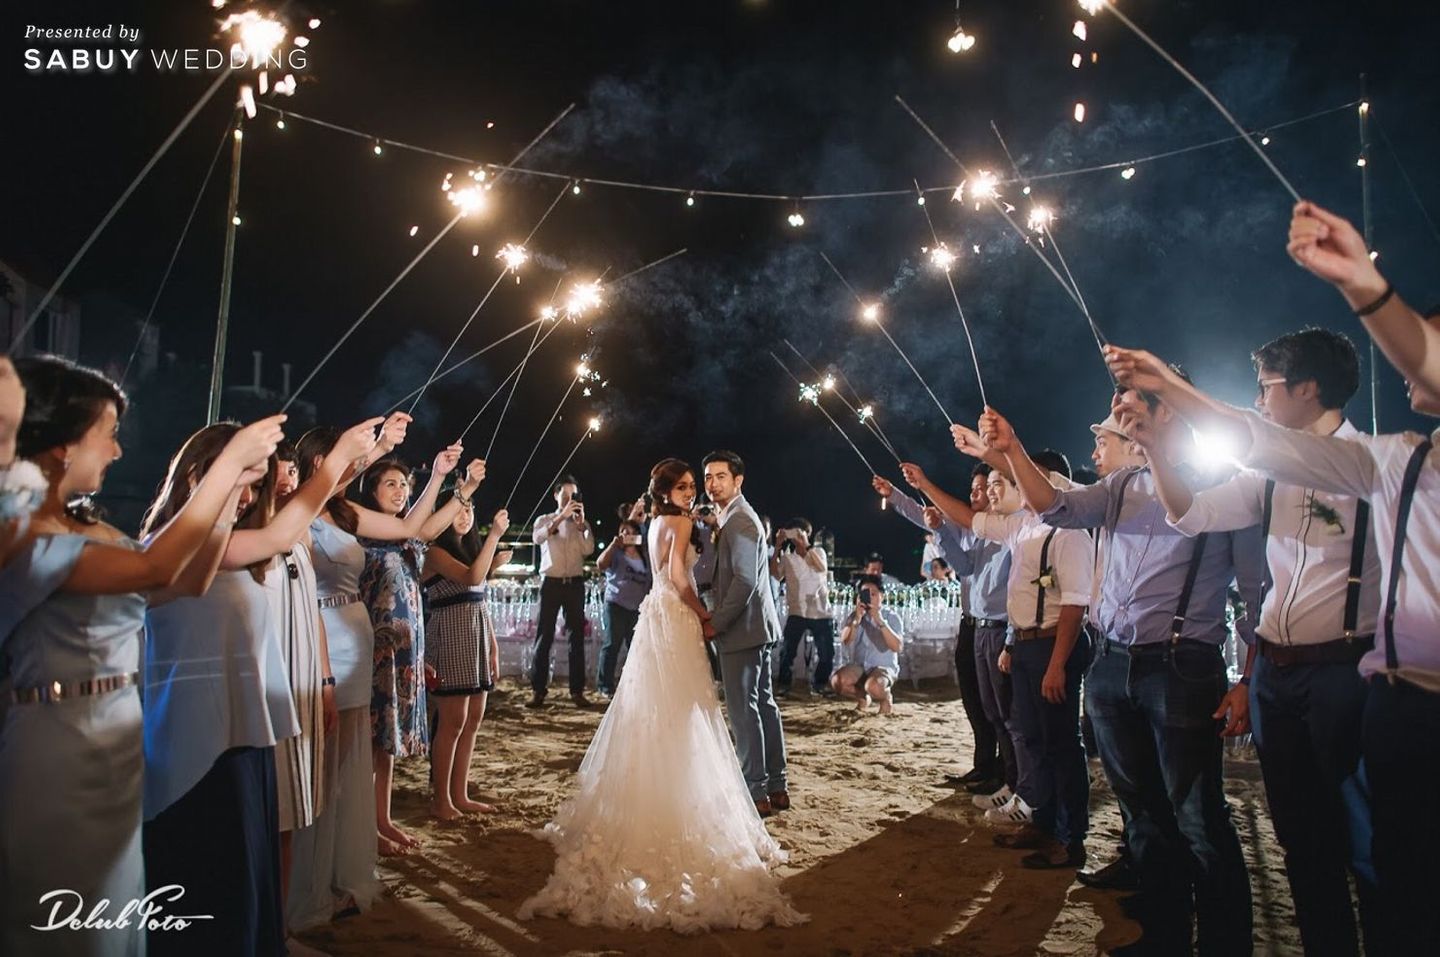 พิธีแต่งงาน,บ่าวสาว,งานแต่งริมทะเล,ชุดบ่าวสาว รีวิวงานแต่งริมทะเล เพิ่มกิมมิคเก๋ด้วยการลอยโคม @Villa Maroc